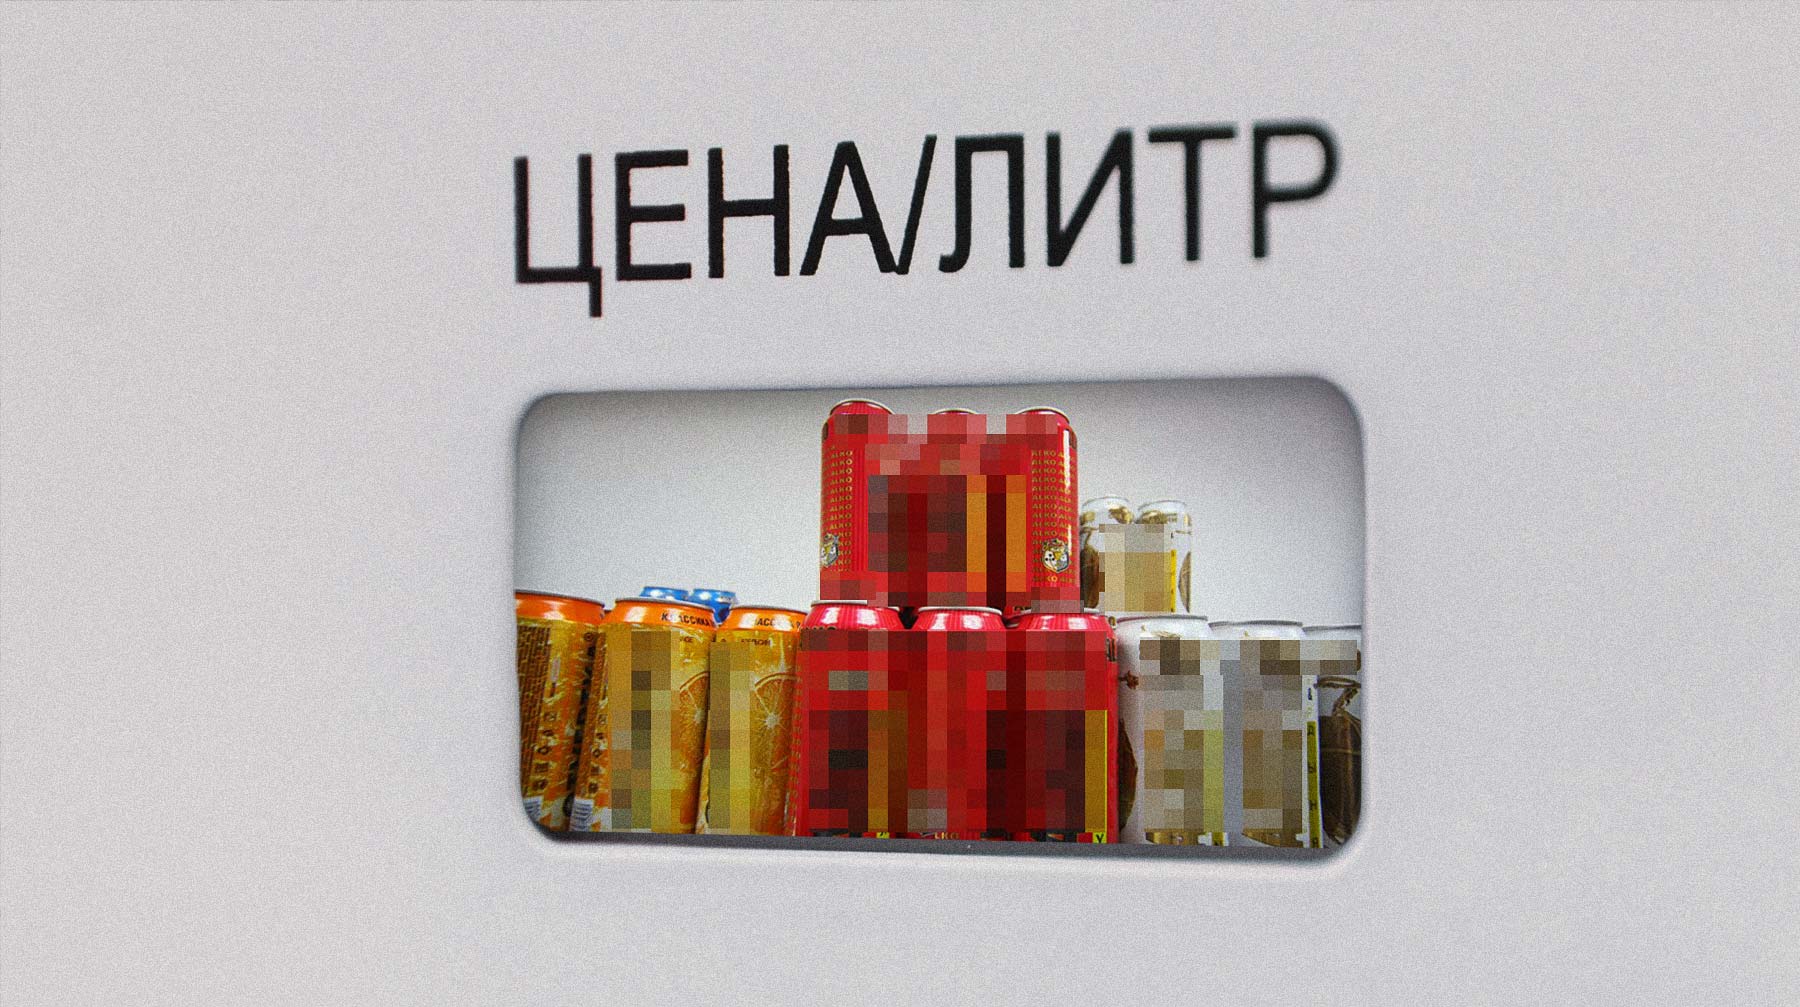 Вагит Алекперов считает, что продажа слабоалкогольных напитков на заправках позволит сгладить скачки цен на бензин Коллаж: © Daily Storm